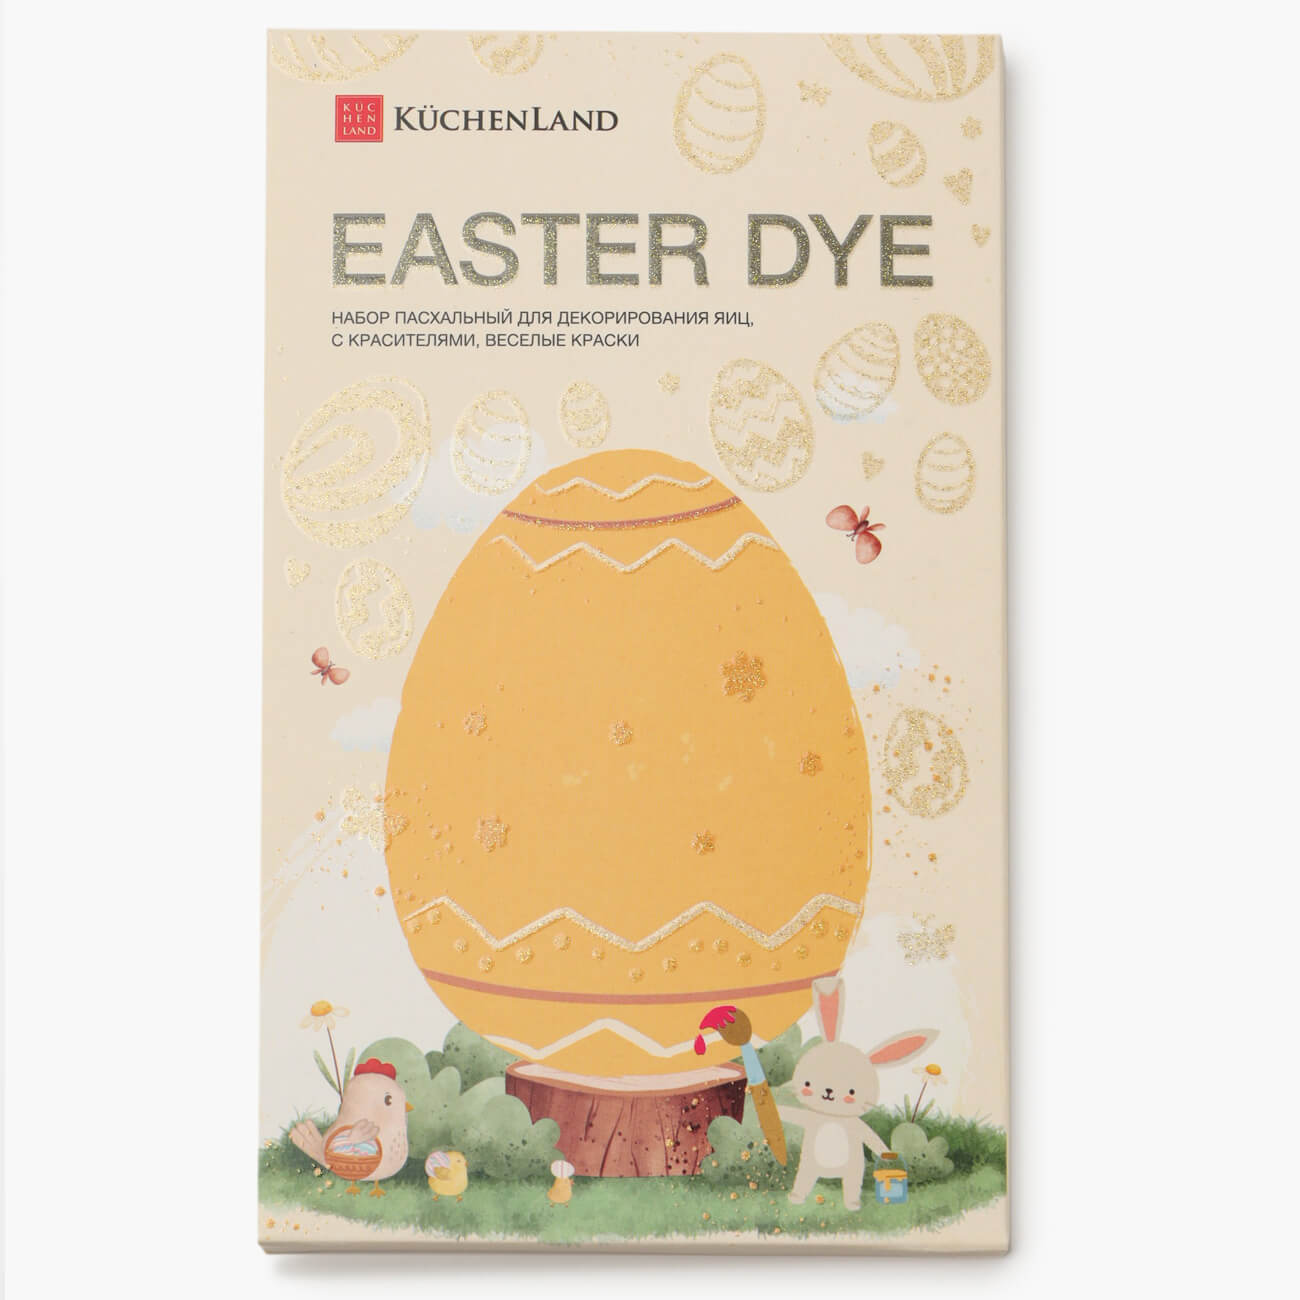 Набор пасхальный для декорирования яиц, 7 цветов/13 пр, Веселые краски, Easter dye набор пасхальный для декорирования яиц 4 а 17 пр зайки easter dye